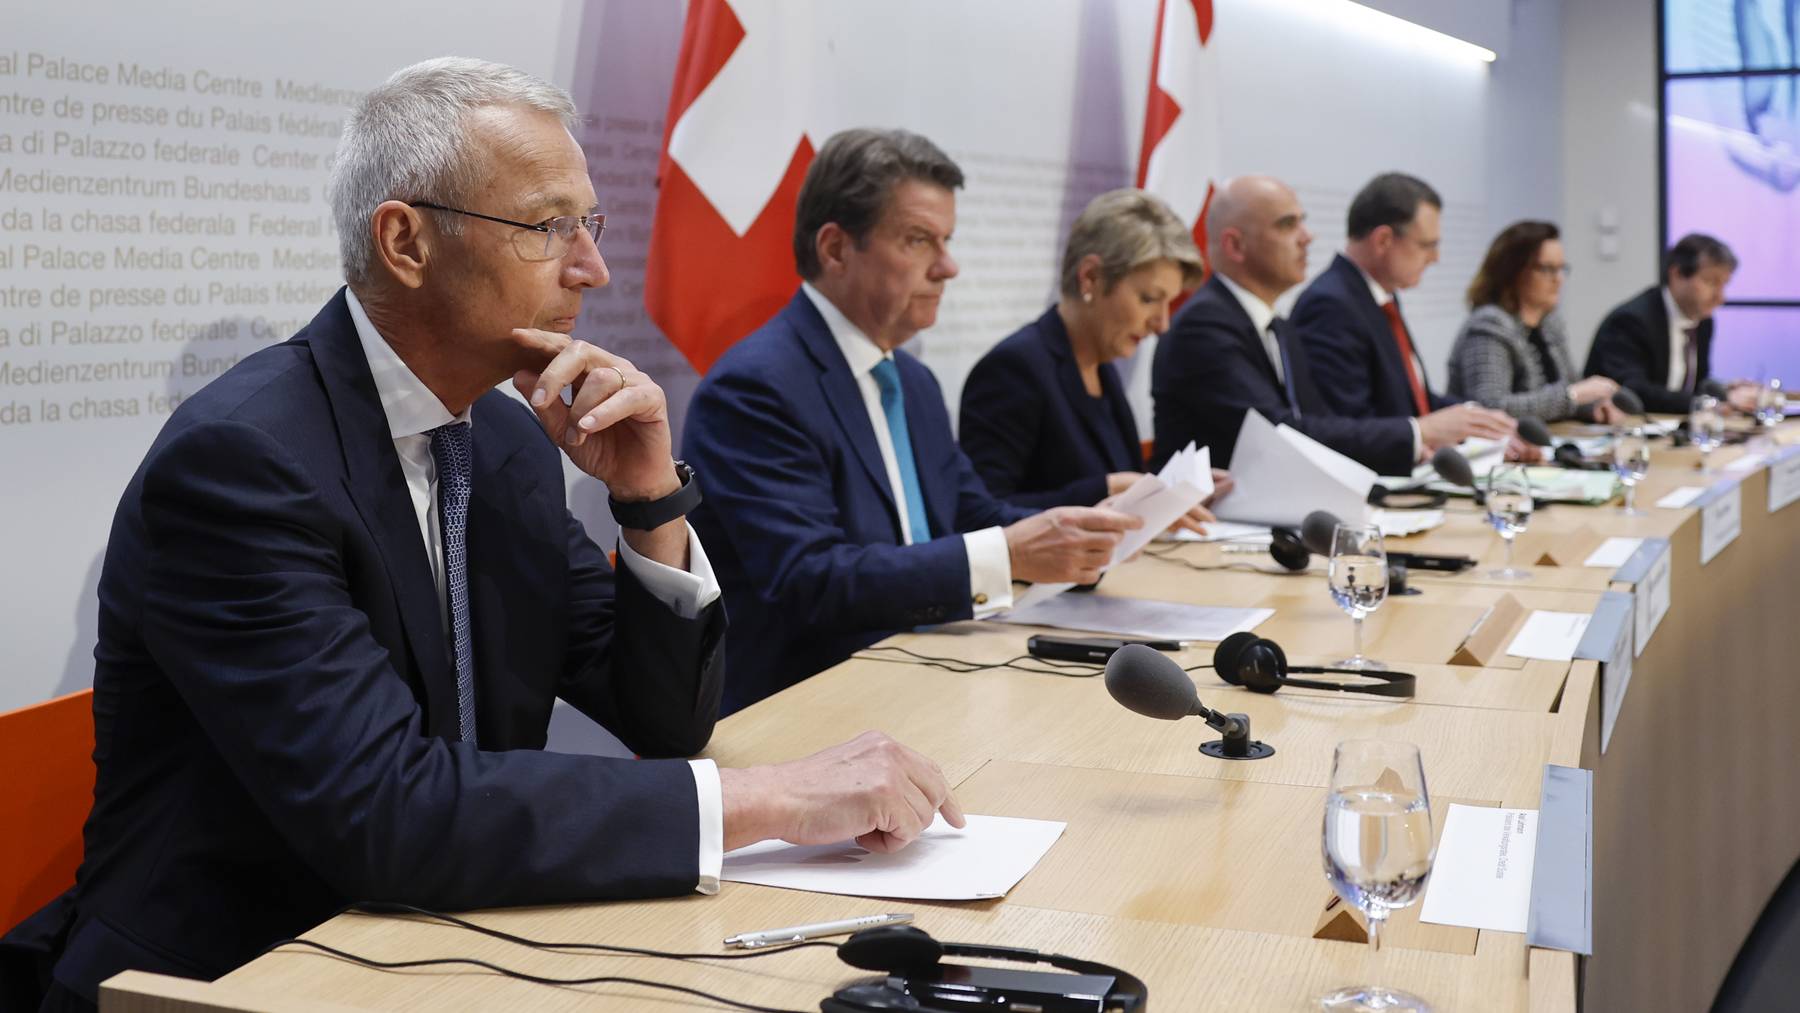 Am 19. März traten Vertreter von Credit Suisse, UBS und Bundesrat vor die Medien.